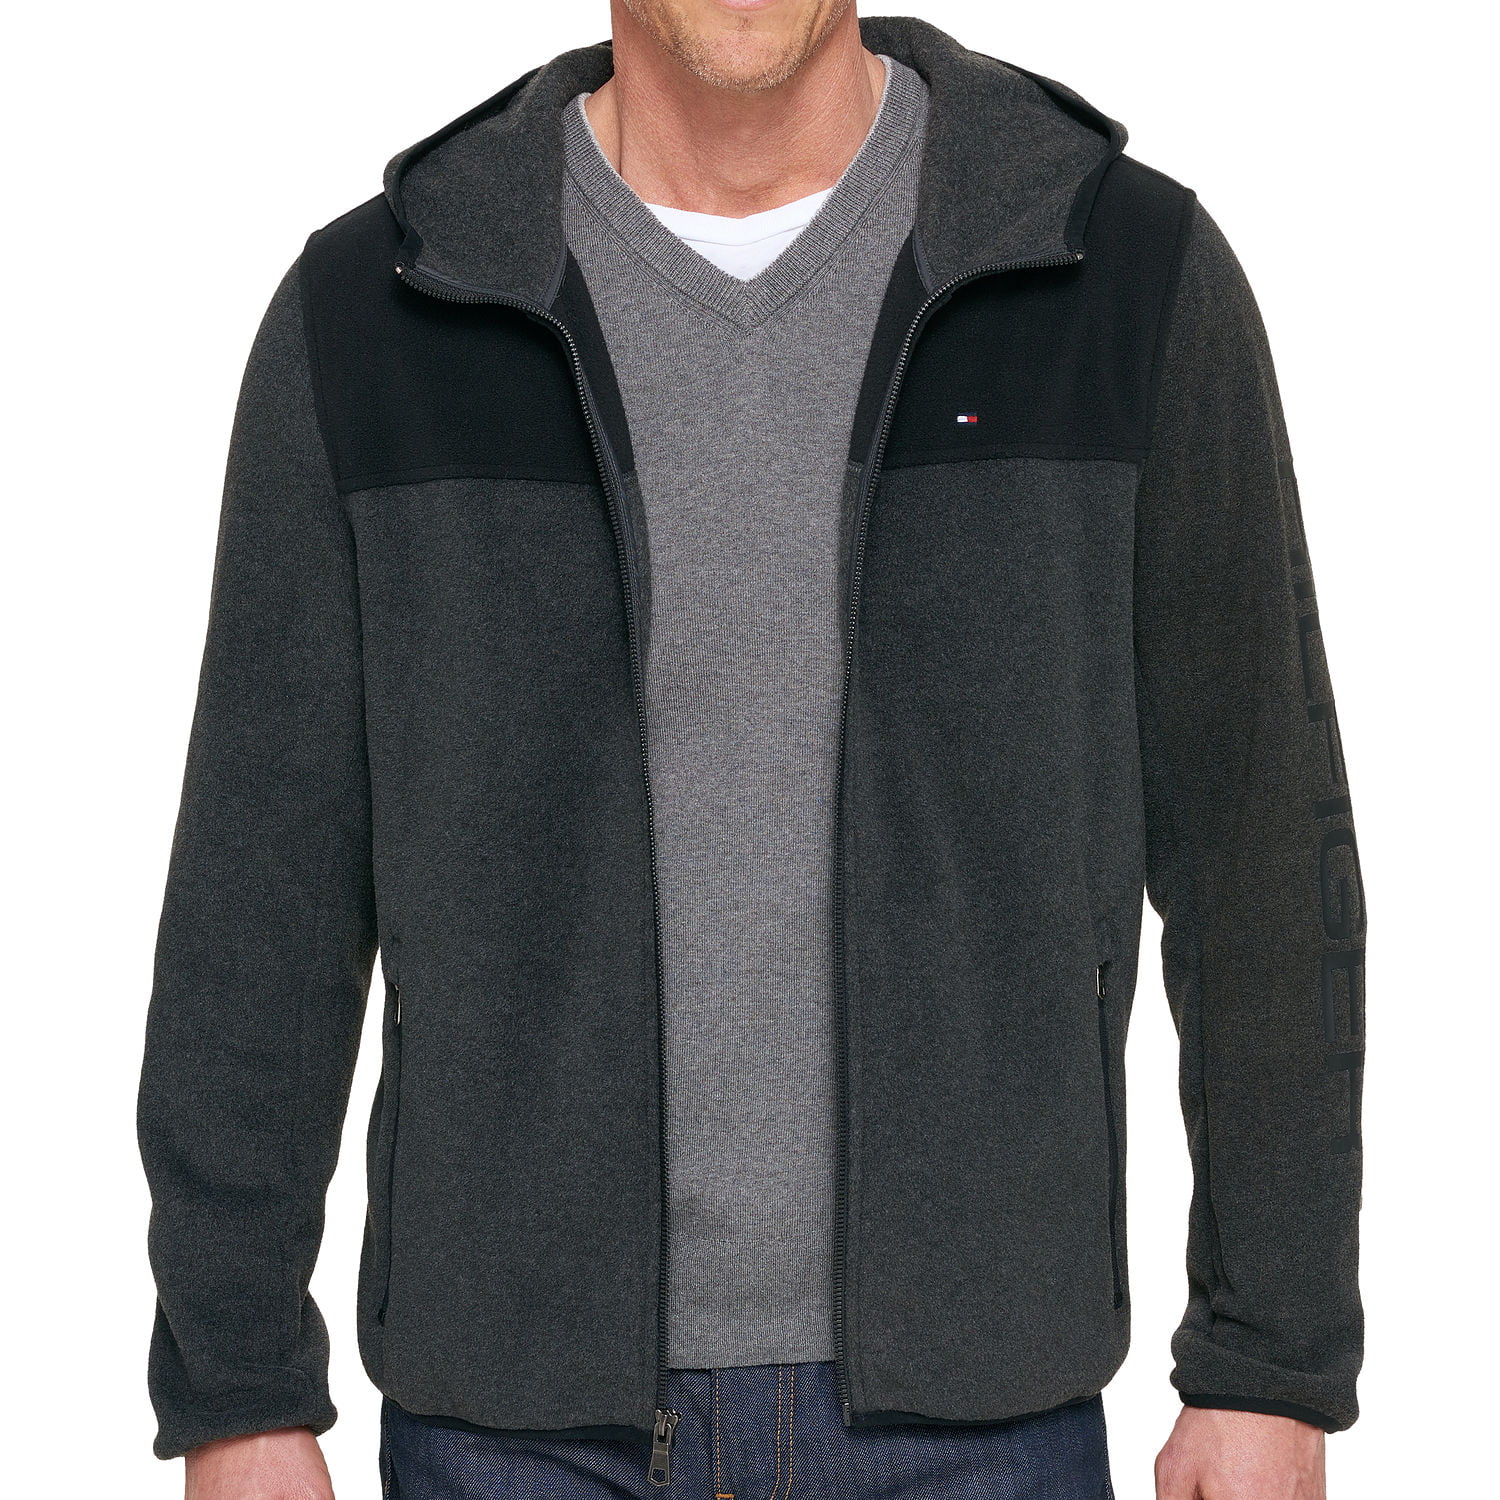 kontoførende flicker Ejeren Tommy Hilfiger Men's Dark Full Zip Fleece Jacket (Large, Gray) - Walmart.com